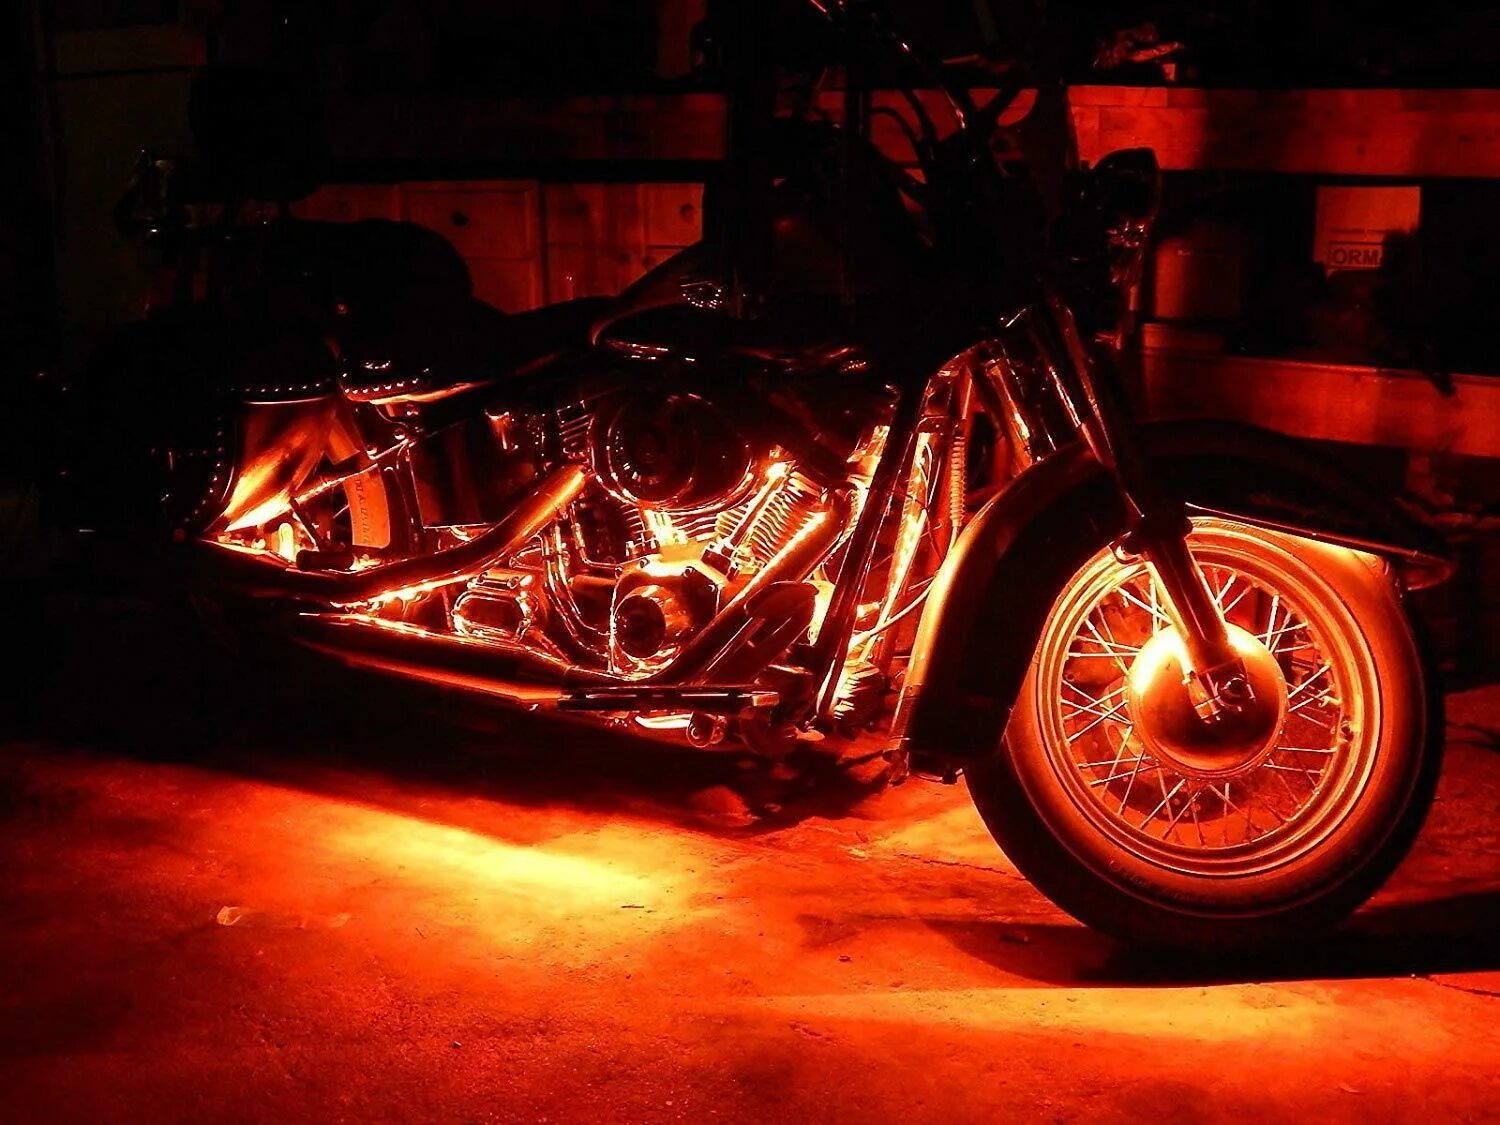 Светящиеся мотоциклы. Yamaha r1 неон. Yamaha r1 2000 неоновая подсветка. Подсветка Харлей Дэвидсон. Мотоцикл с подсветкой.